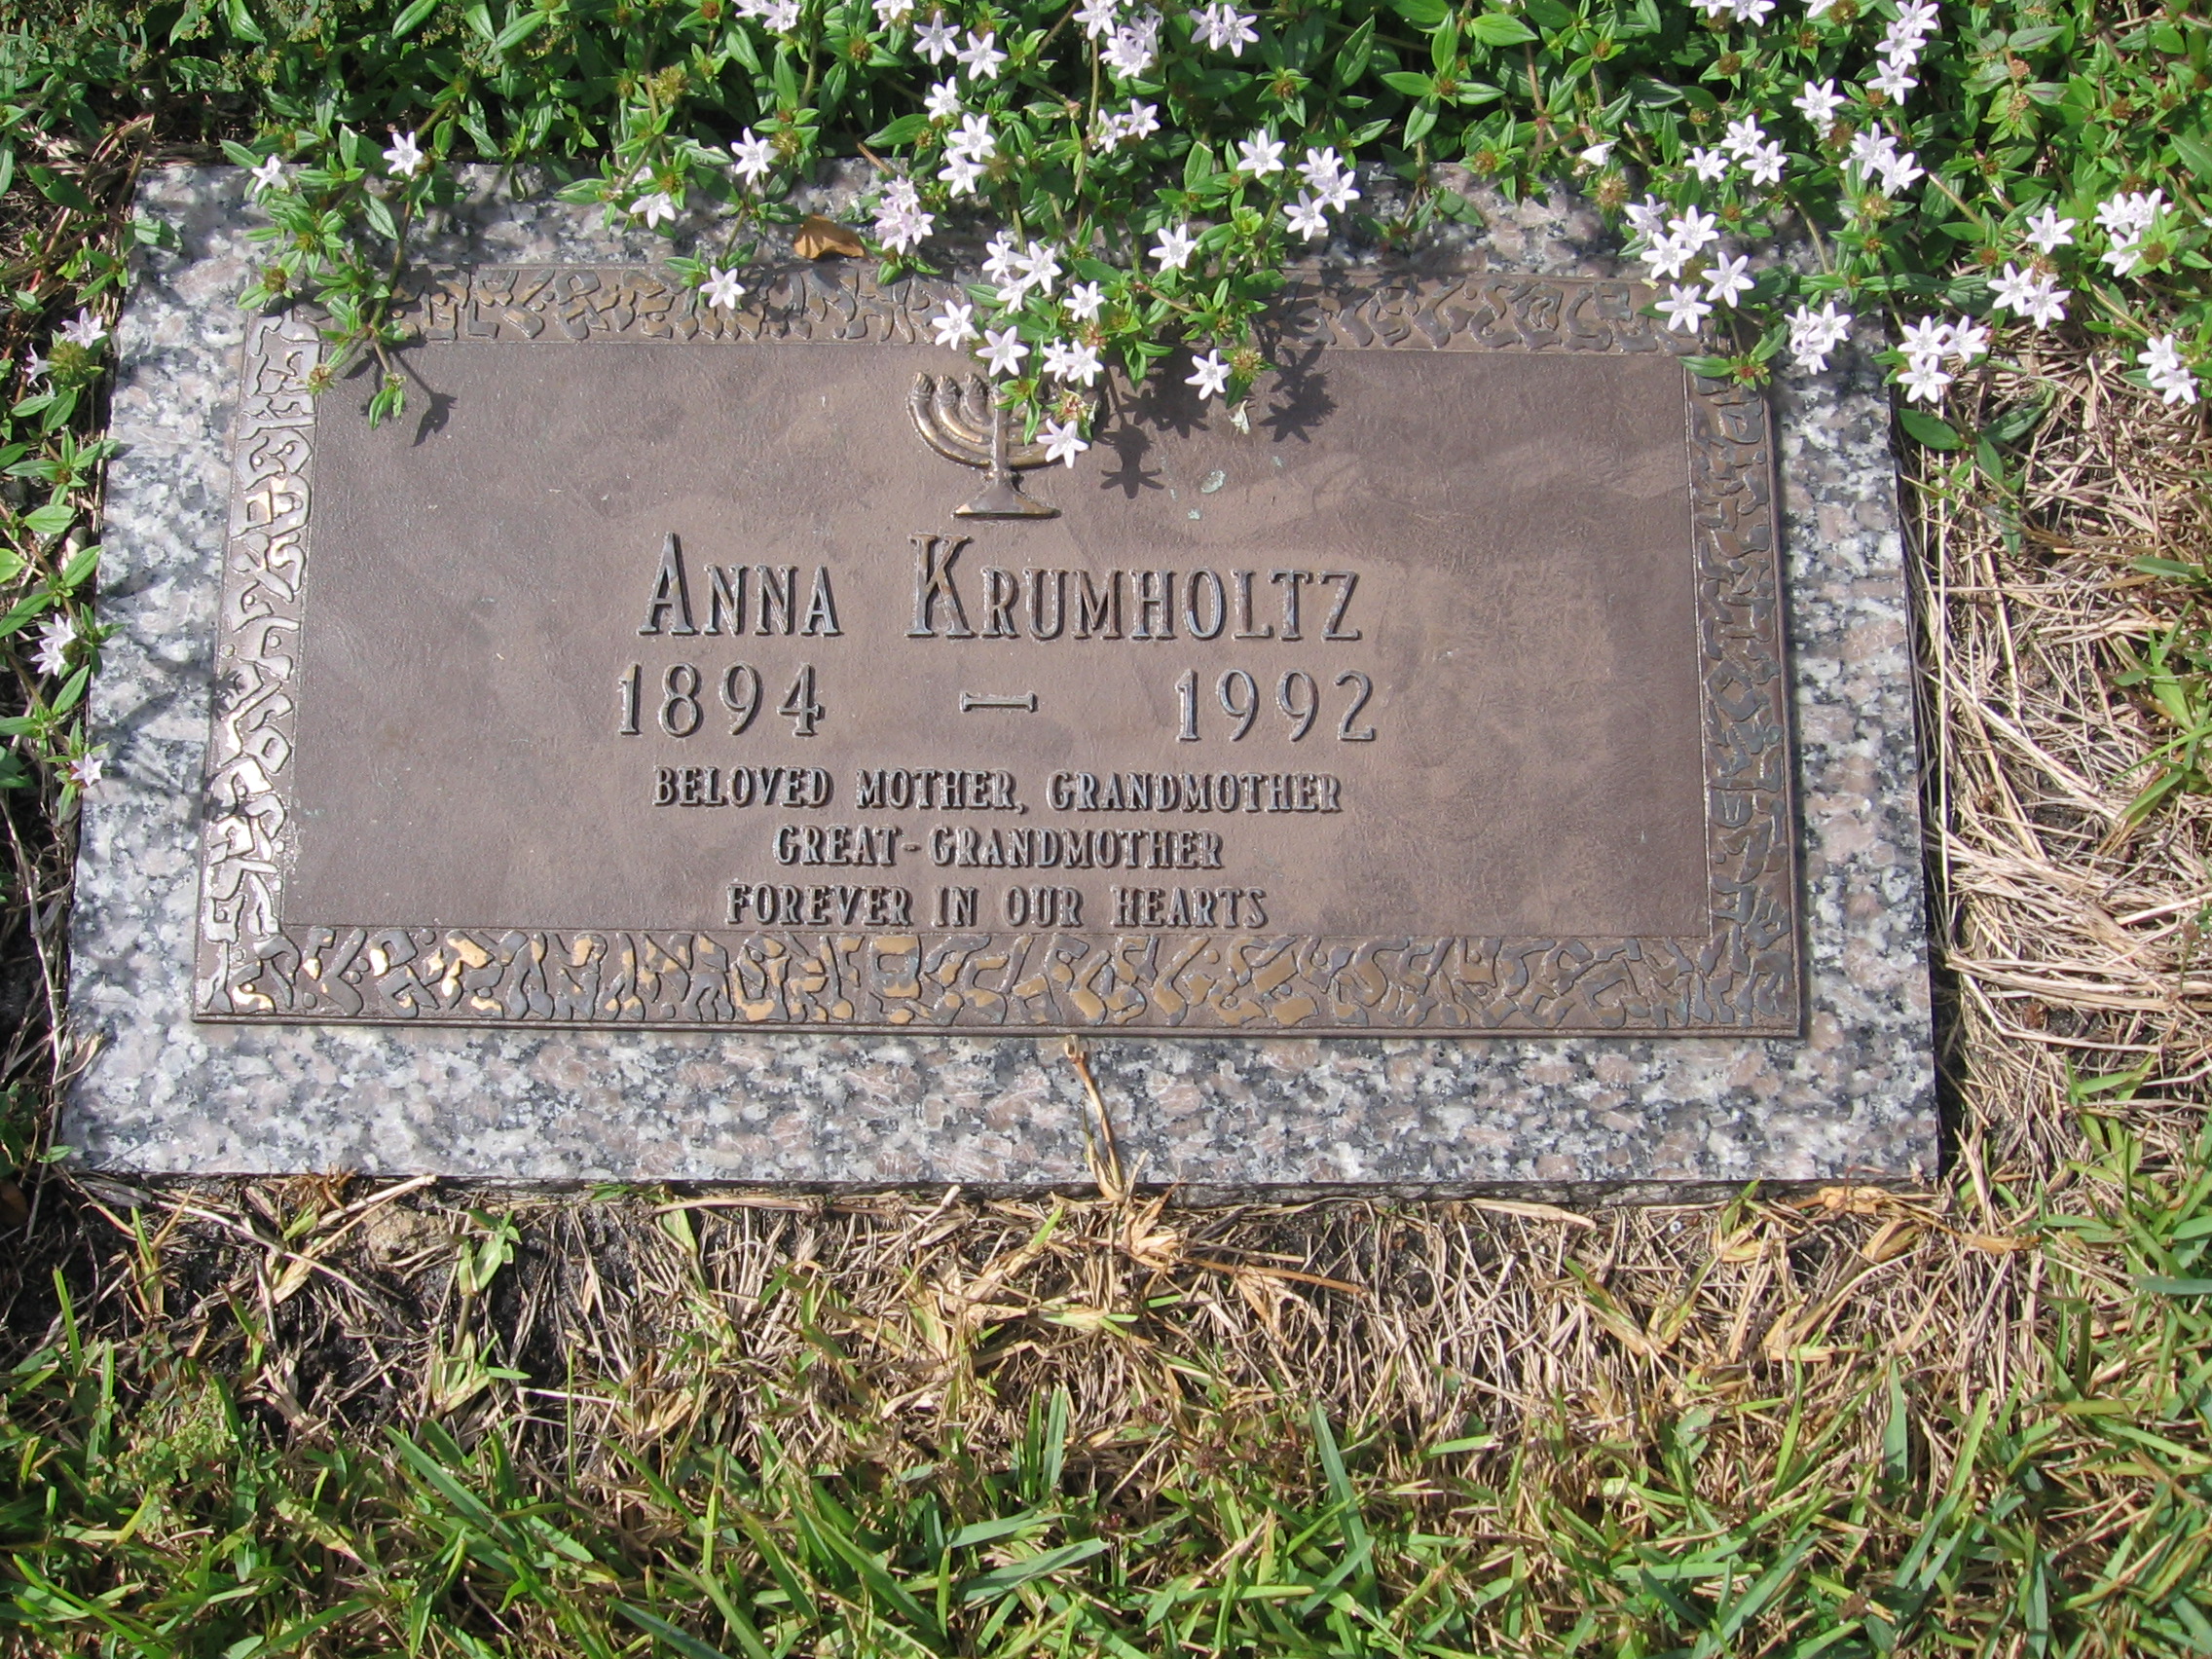 Anna Krumholtz